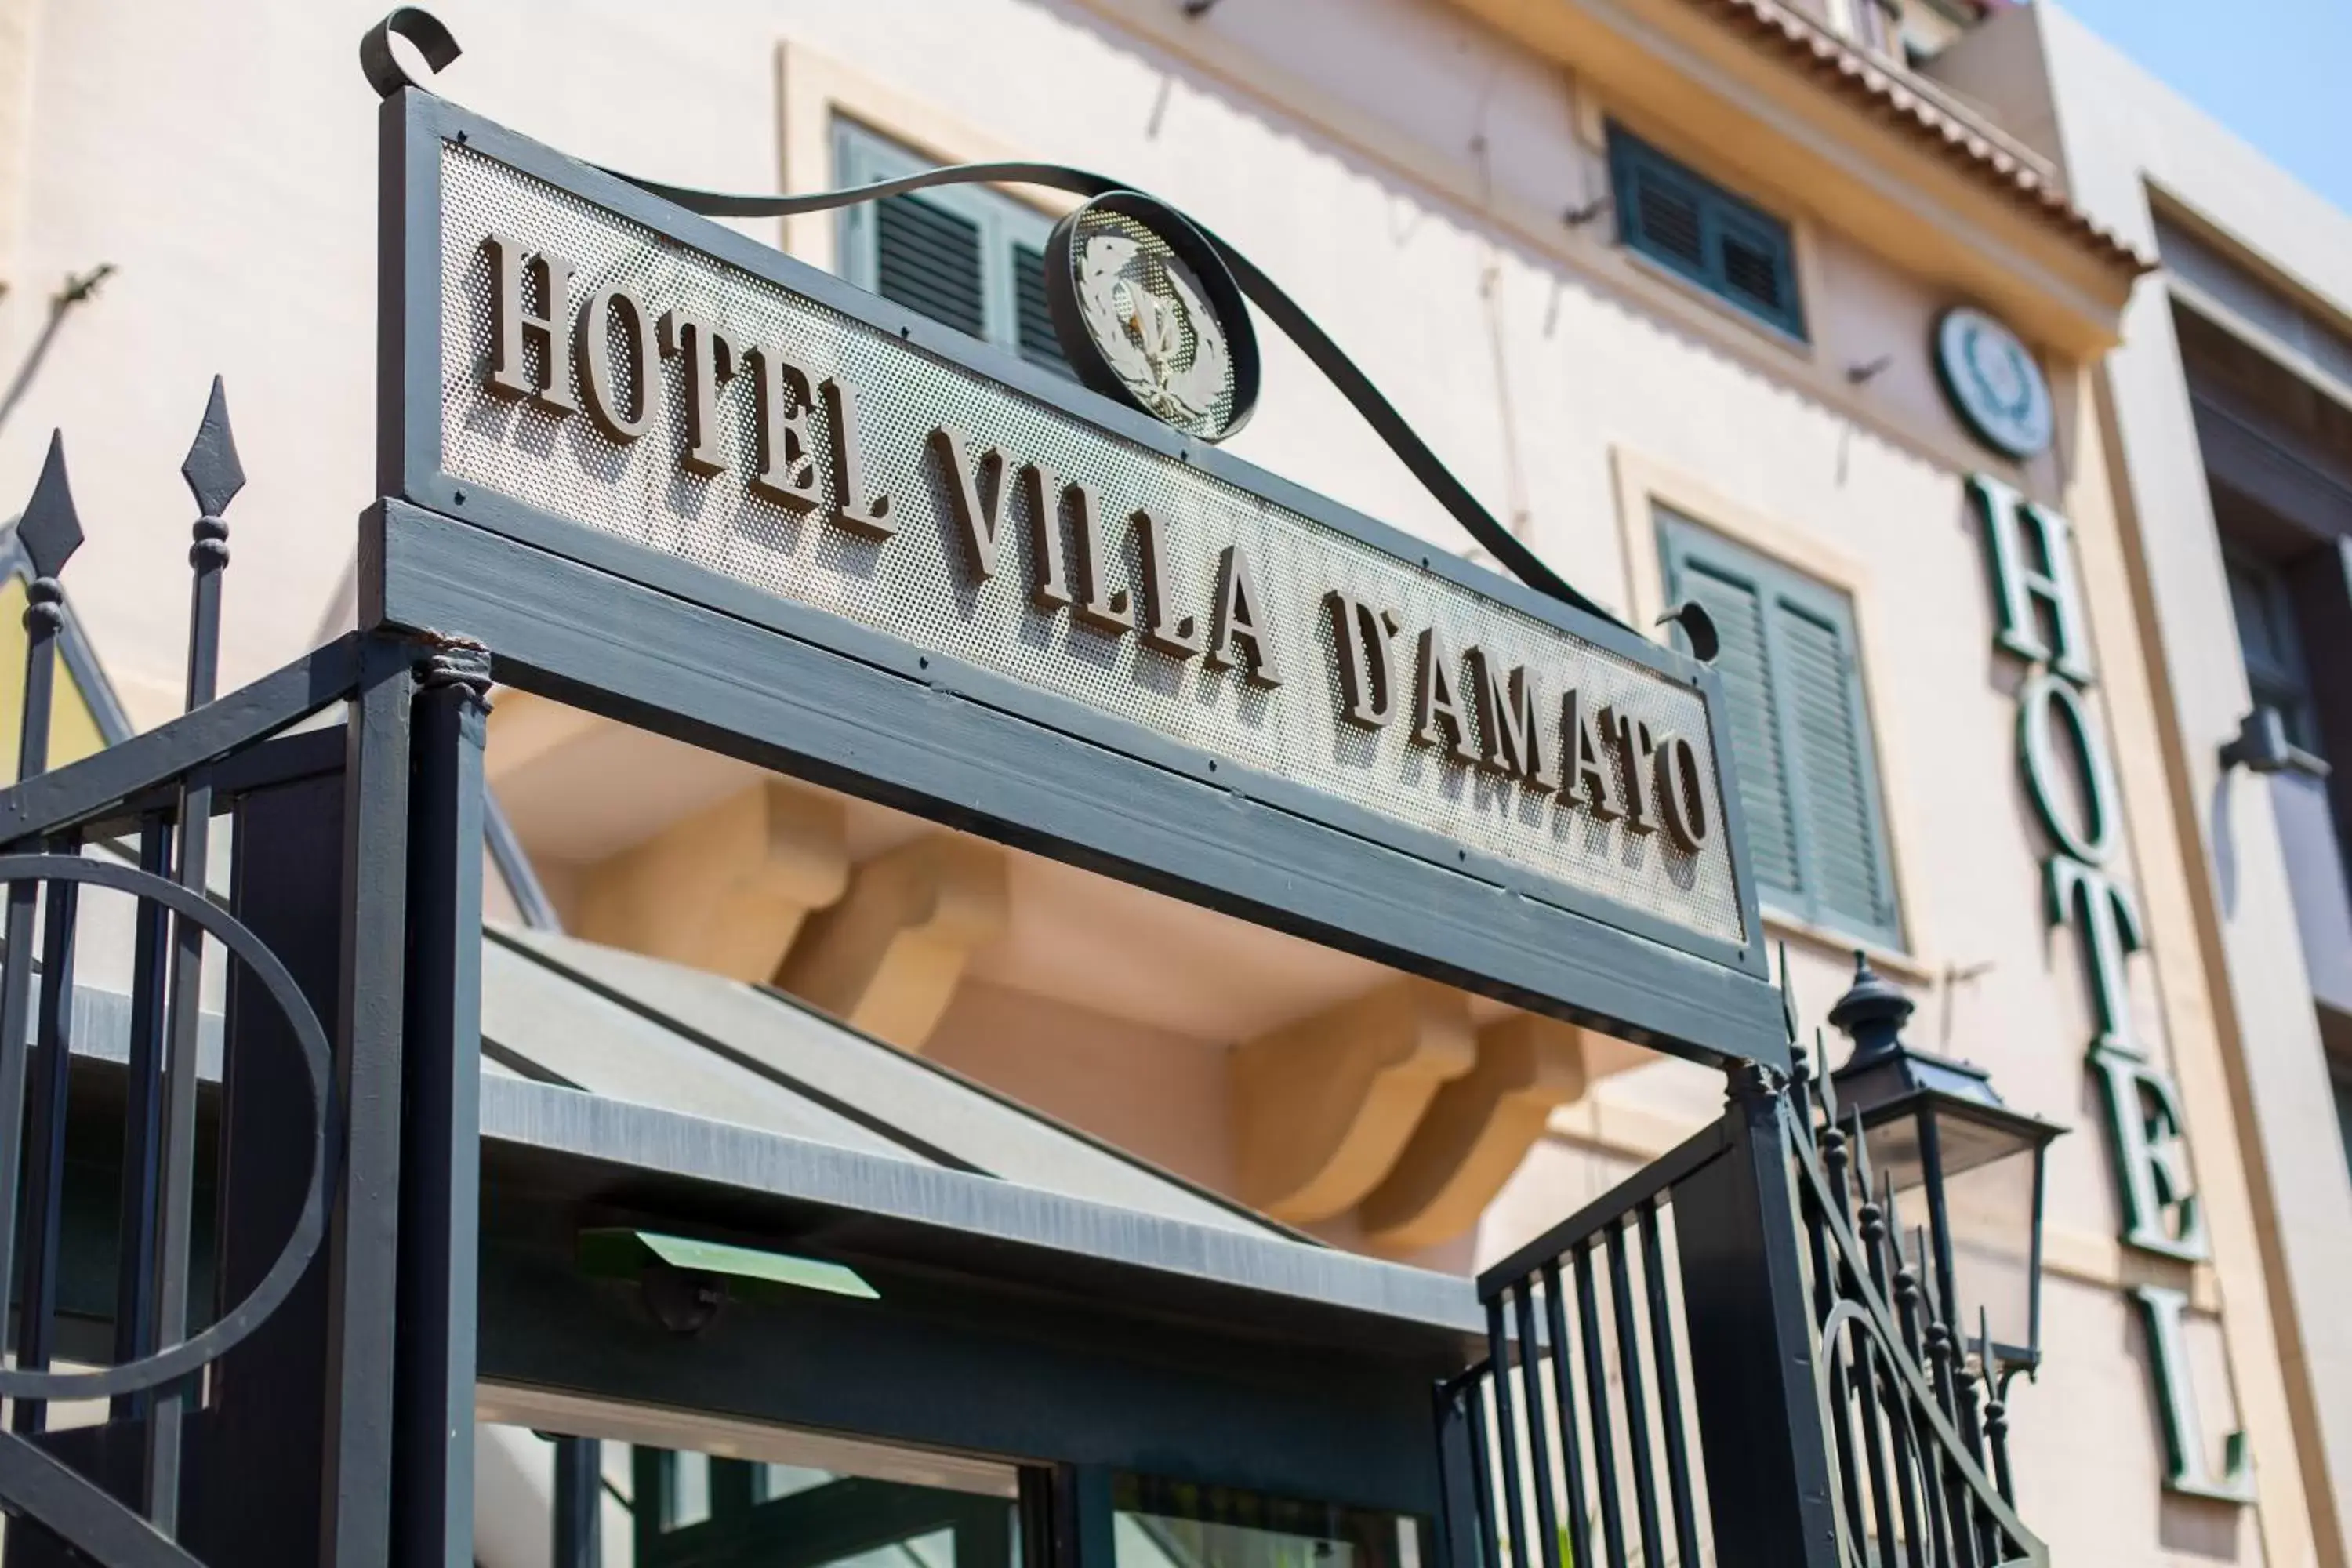 Facade/entrance in Hotel Villa d'Amato